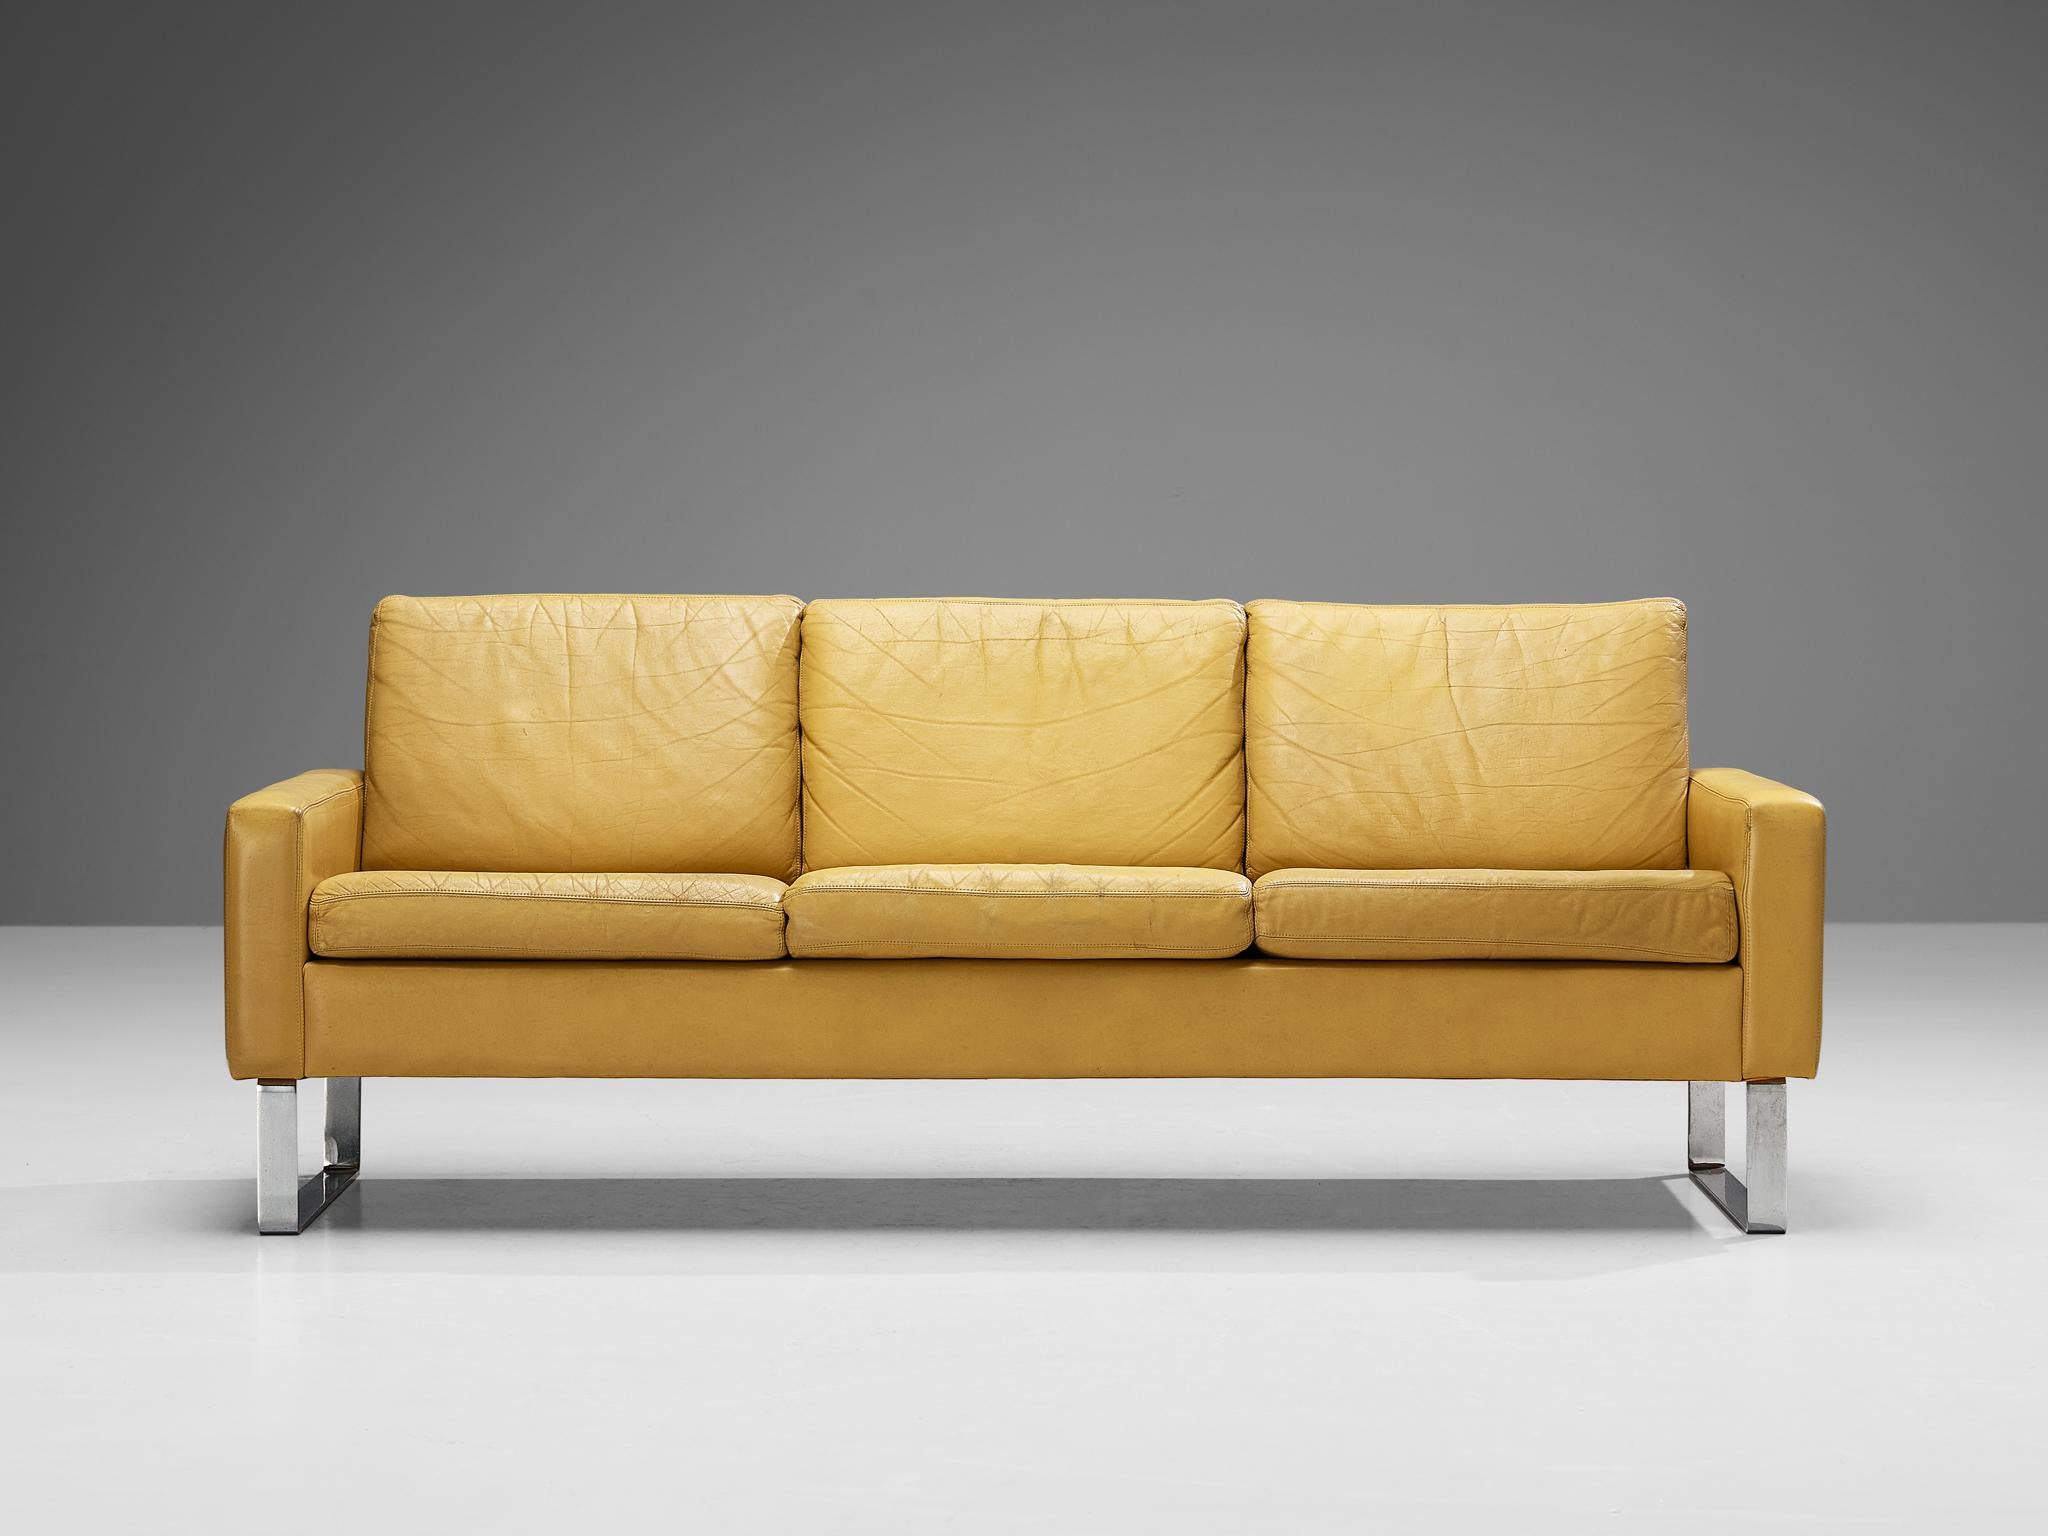 Canapé, cuir, acier chromé, Allemagne, années 1960

Ce canapé profilé a une apparence simple, mais la combinaison des matériaux et la géométrie définie de cette pièce, ce canapé rayonne de grâce et de style. Marqué par des lignes angulaires claires,